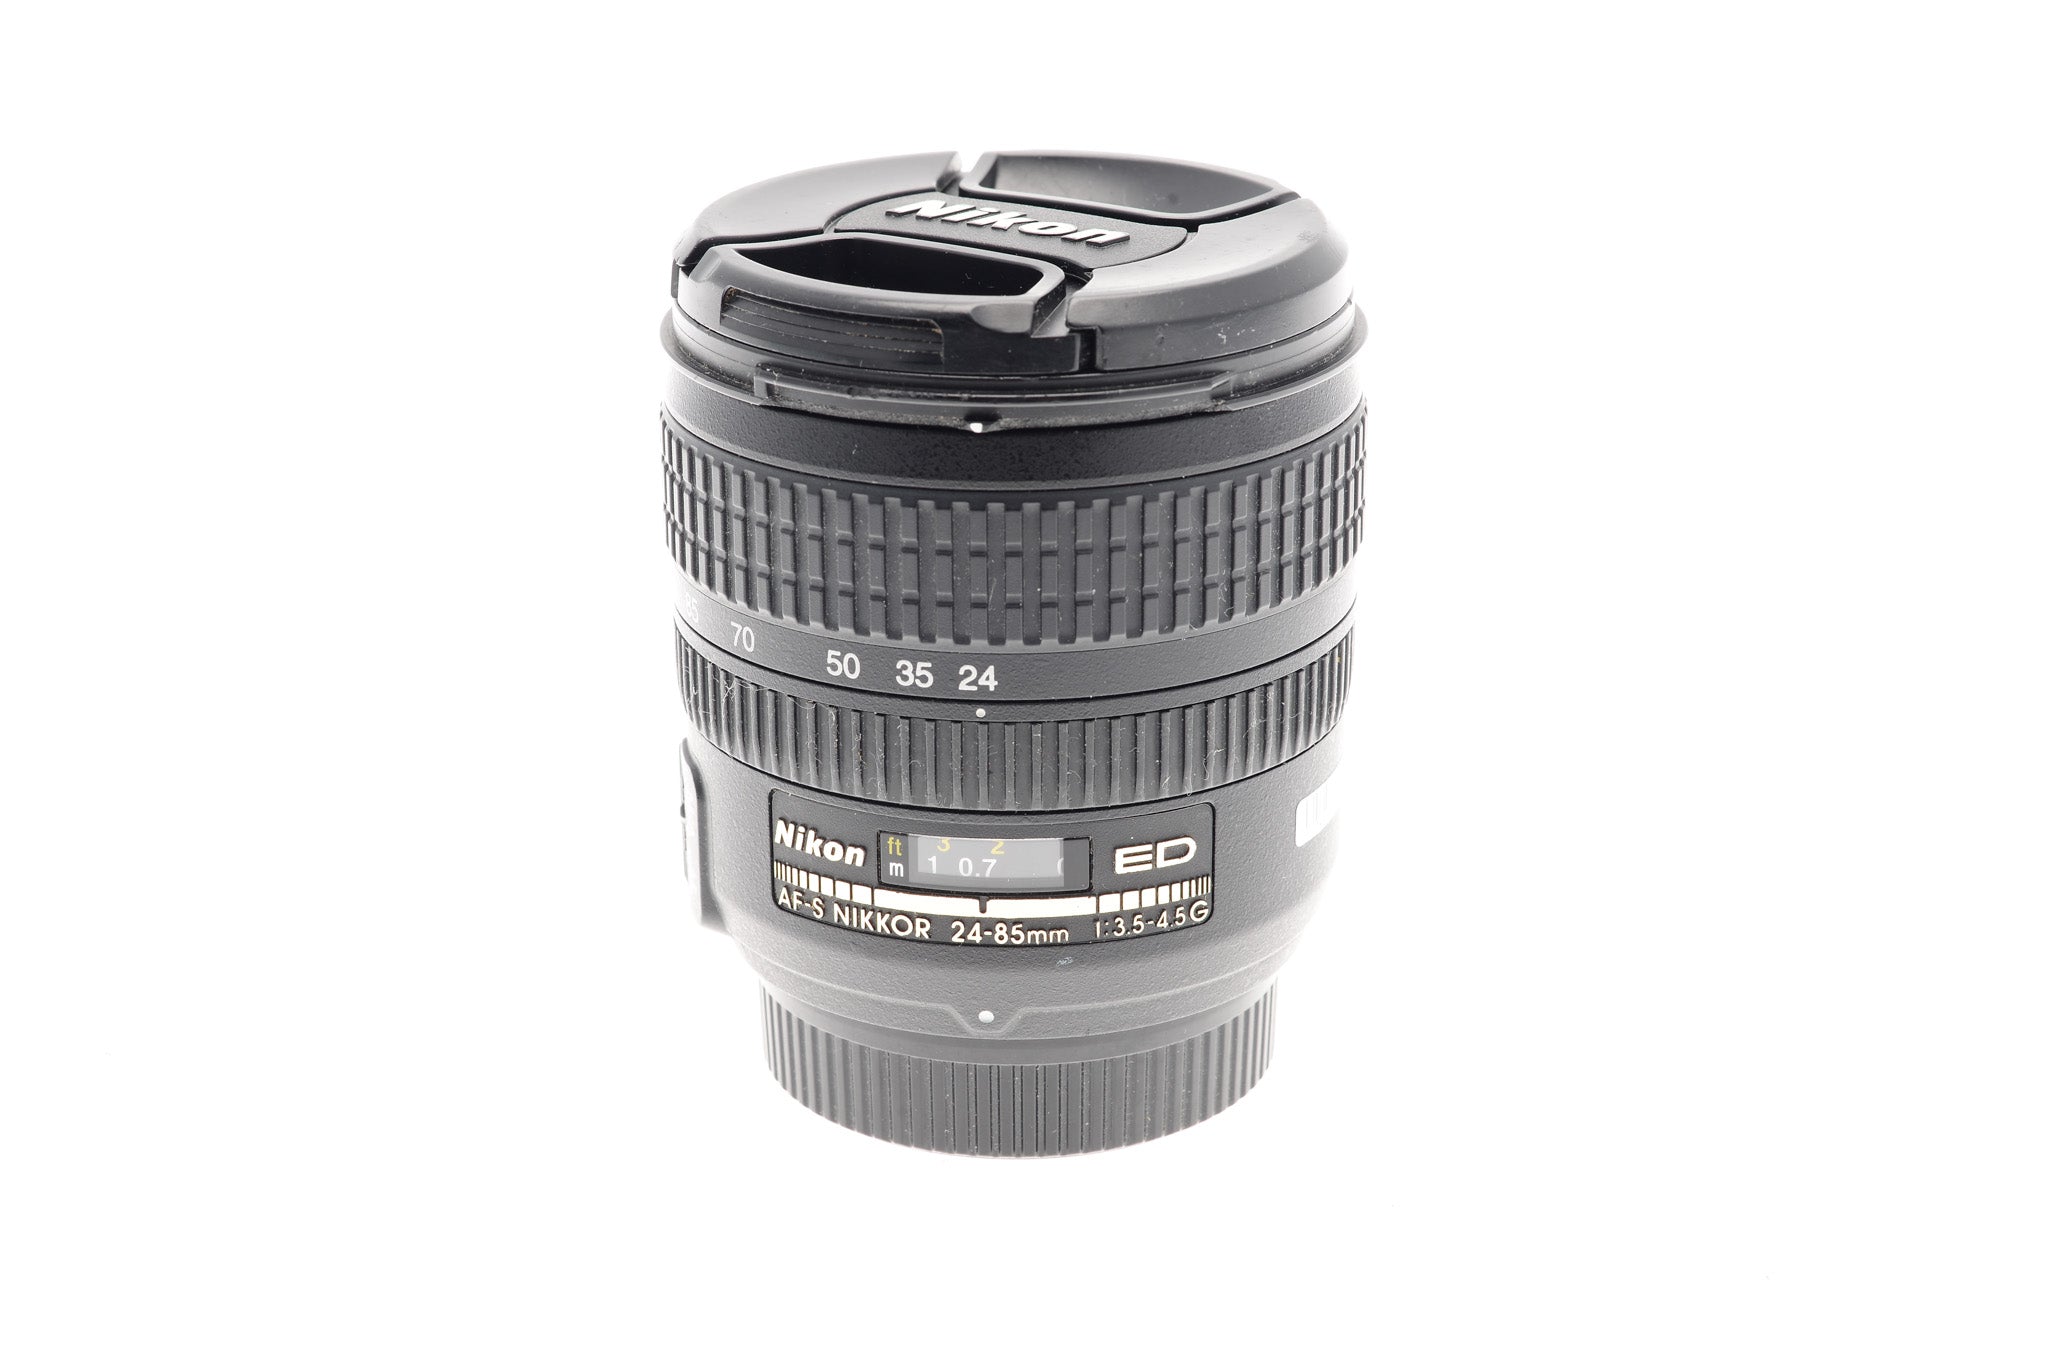 Nikon 24-85mm f3.5-4.5 G ED VR AF-S Nikkor - Lens – Kamerastore